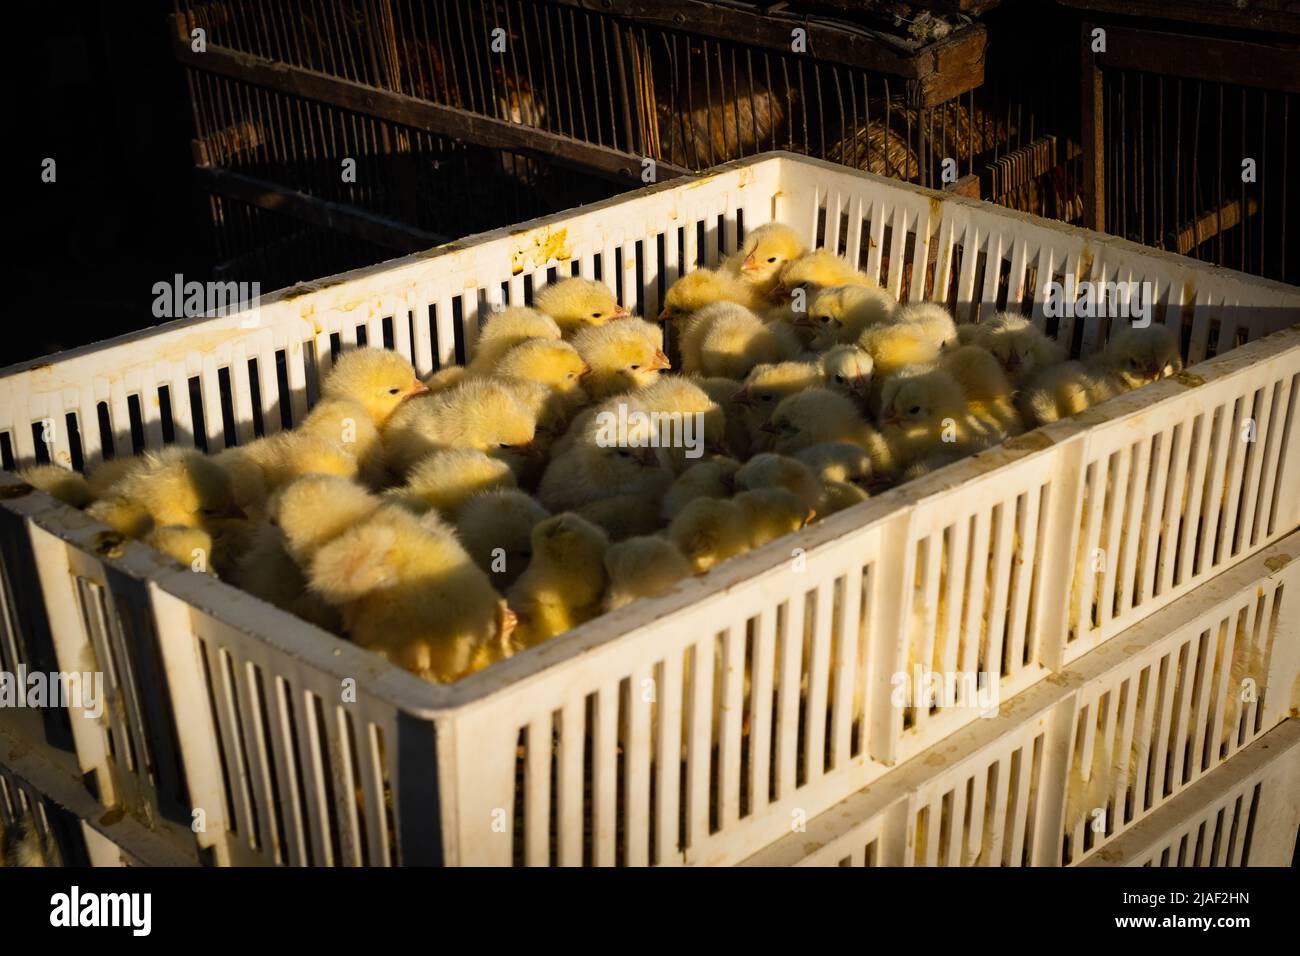 Caja de polluelos en el mercado Foto de stock